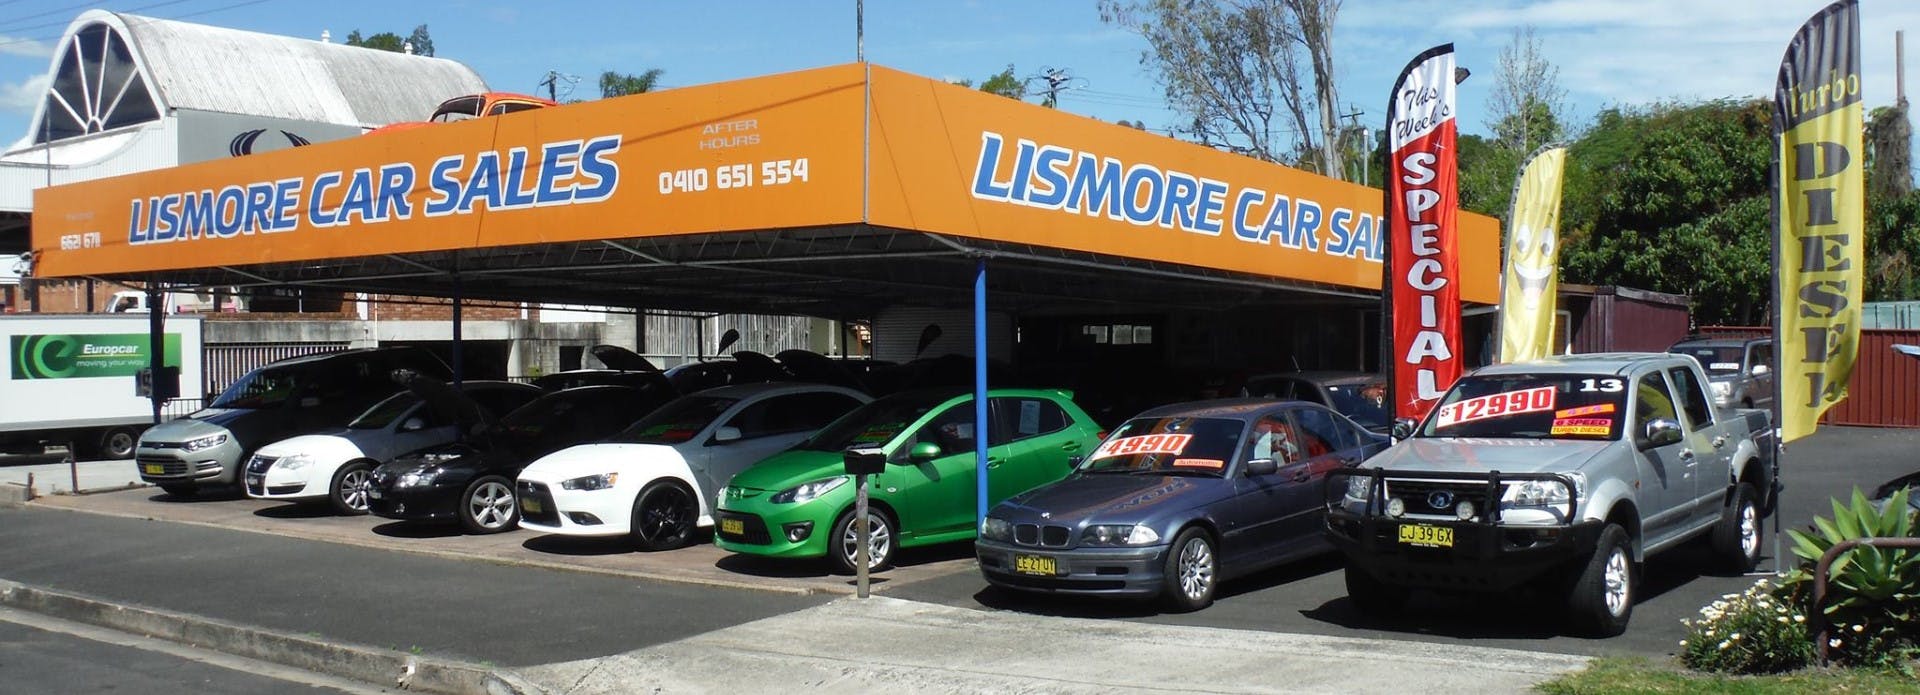 Lismore Car Sales